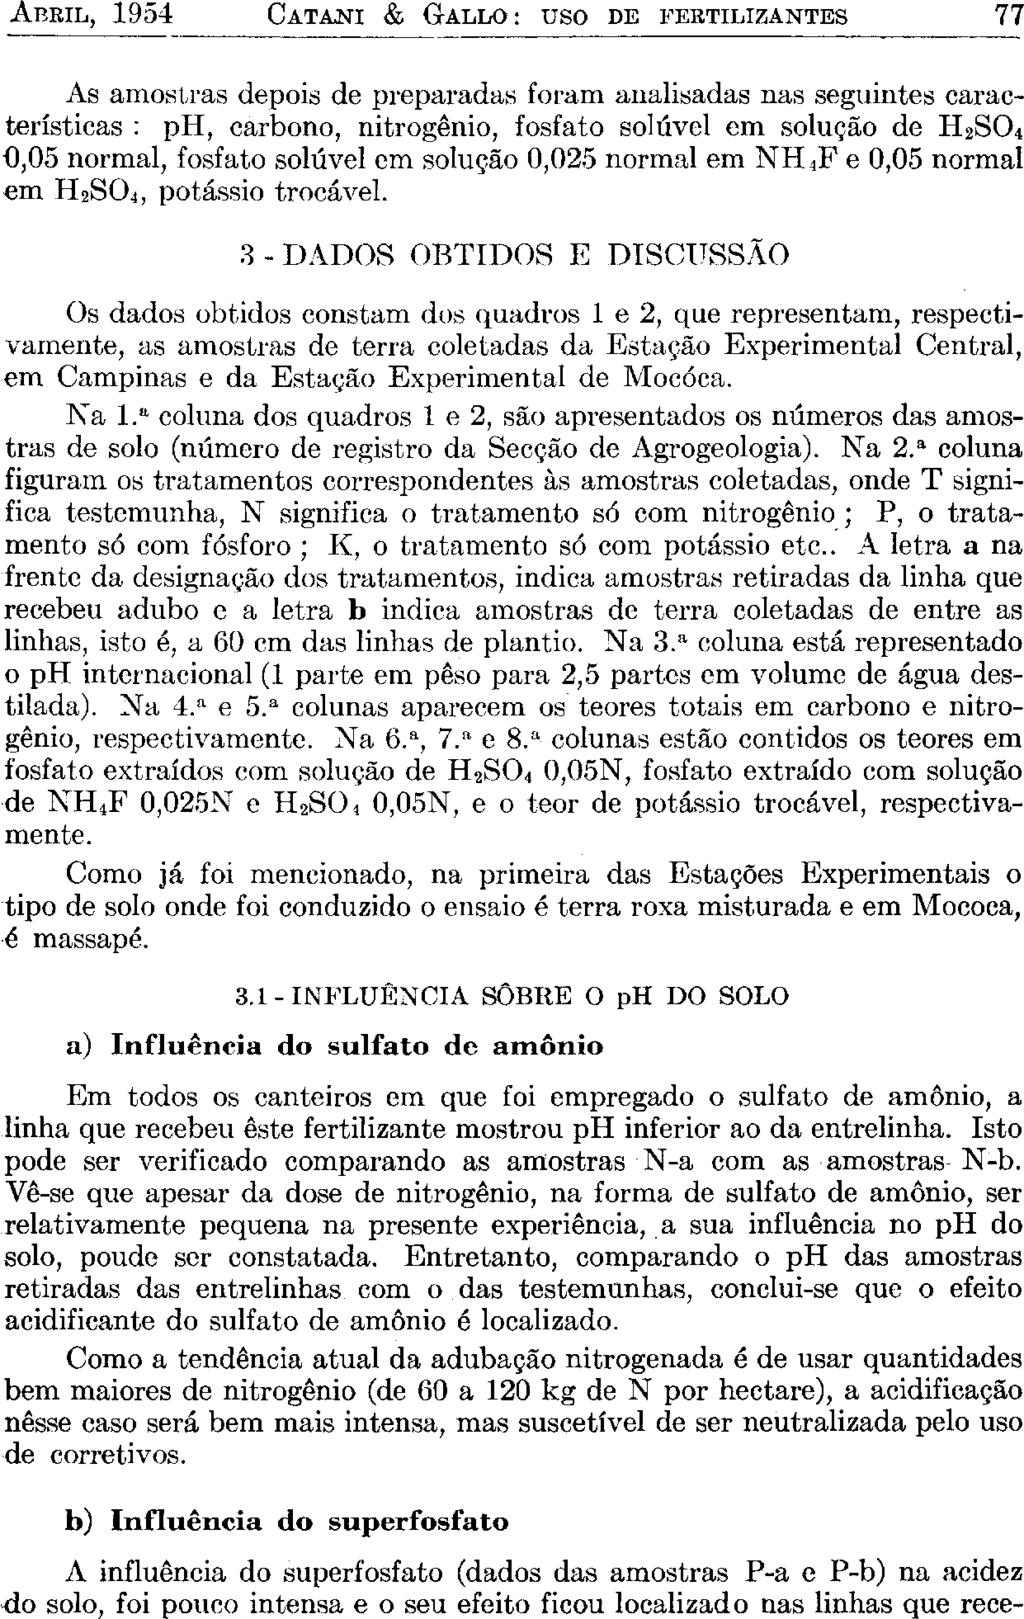 ABRIL, 1954 CATANI & GALLO : uso DE FERTILIZANTES 77 As amostras depois de preparadas foram analisadas nas seguintes características : ph, carbono, nitrogênio, fosfato solúvel em solução de H 2 0,05